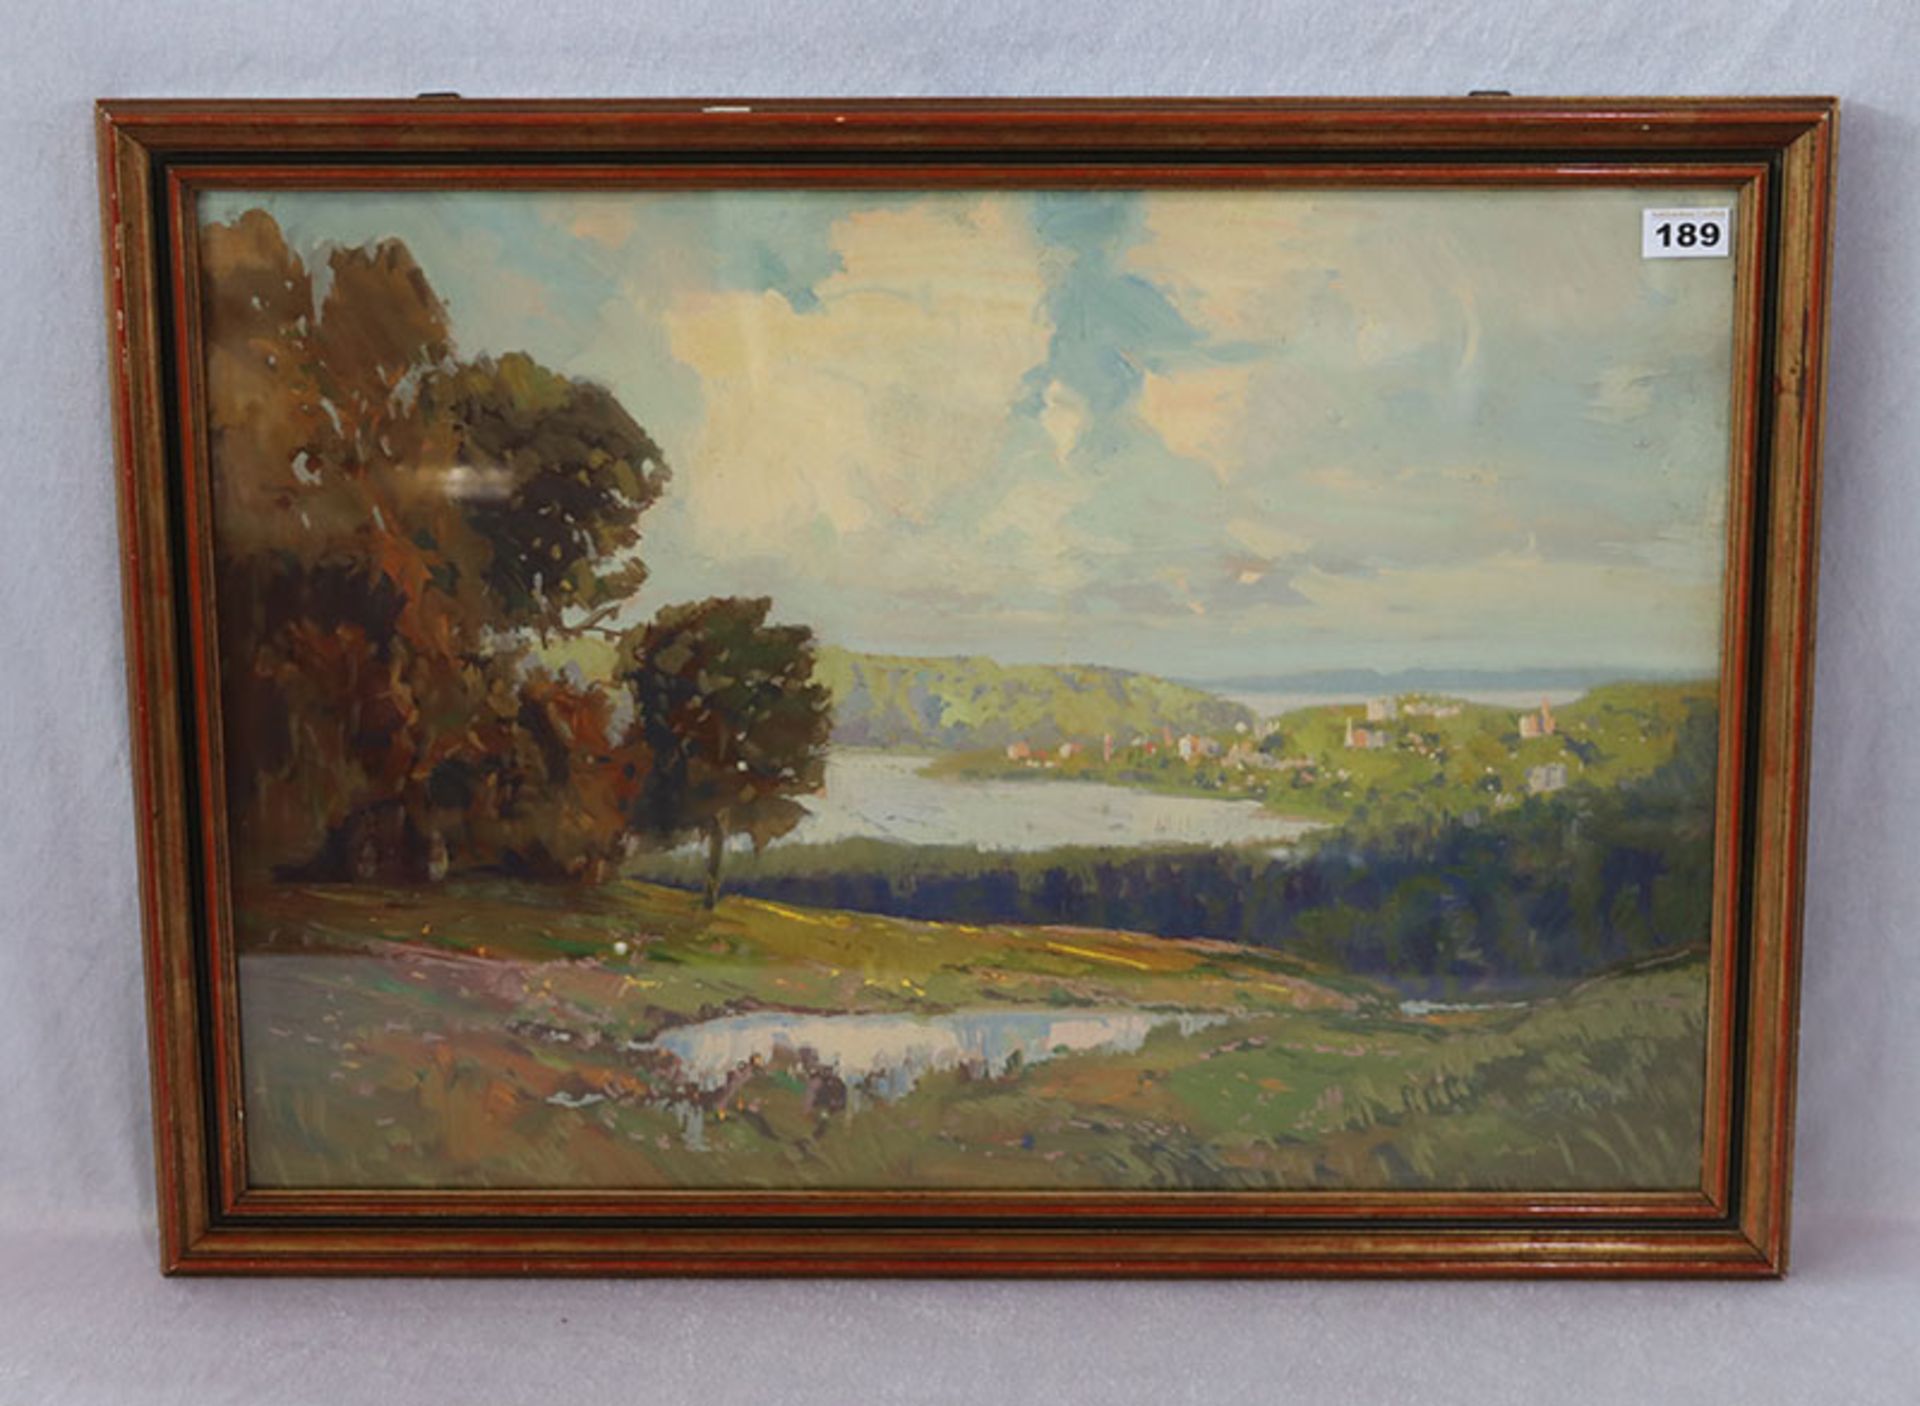 Gemälde ÖL/Malkarton 'Landschafts-Szenerie', undeutlich signiert, datiert 1930, unter Glas